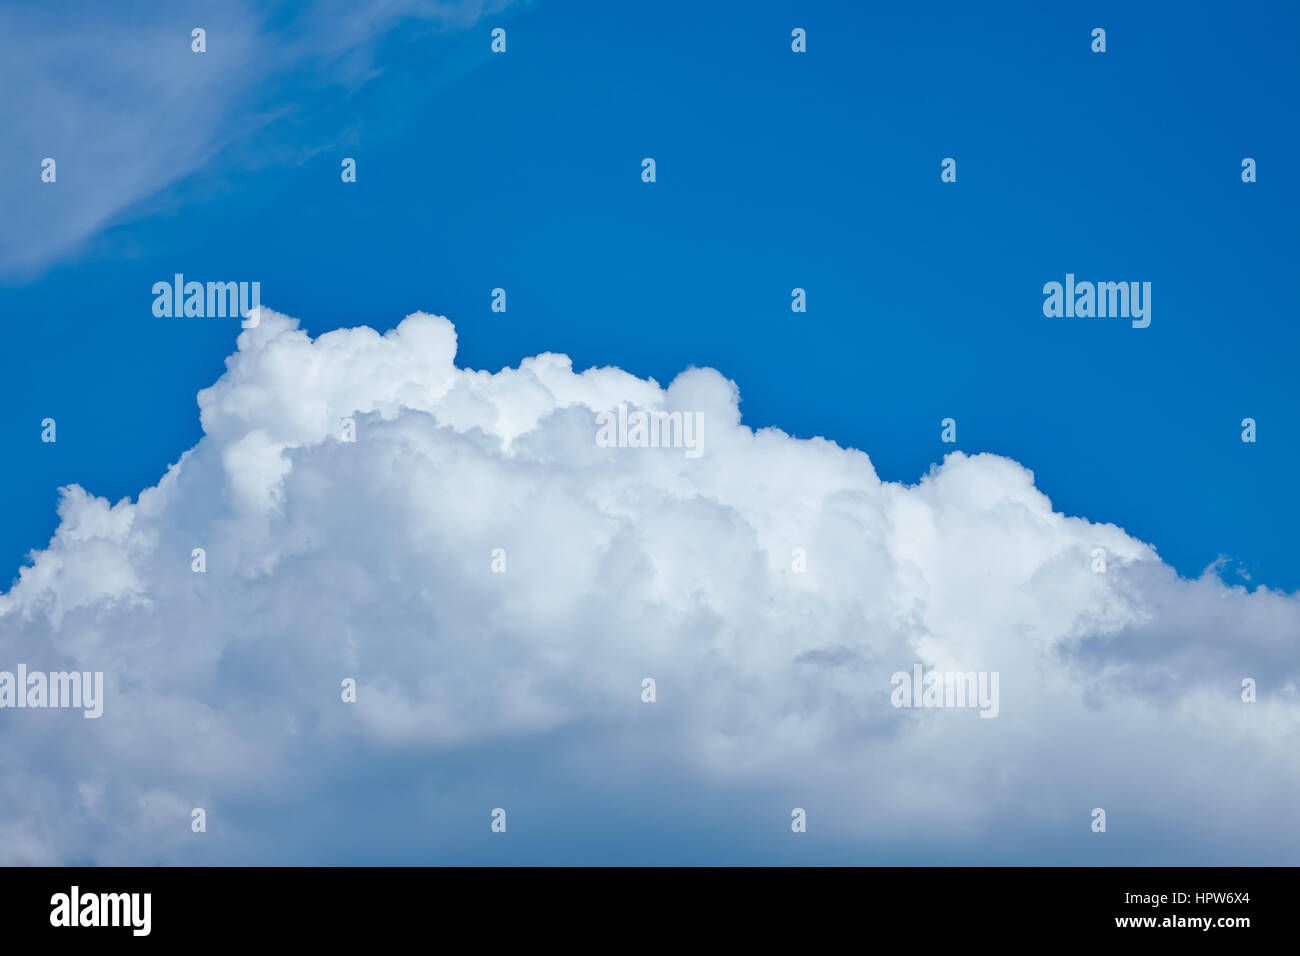 Flauschige weiße Wolkendecke am blauen Himmel Stockfoto